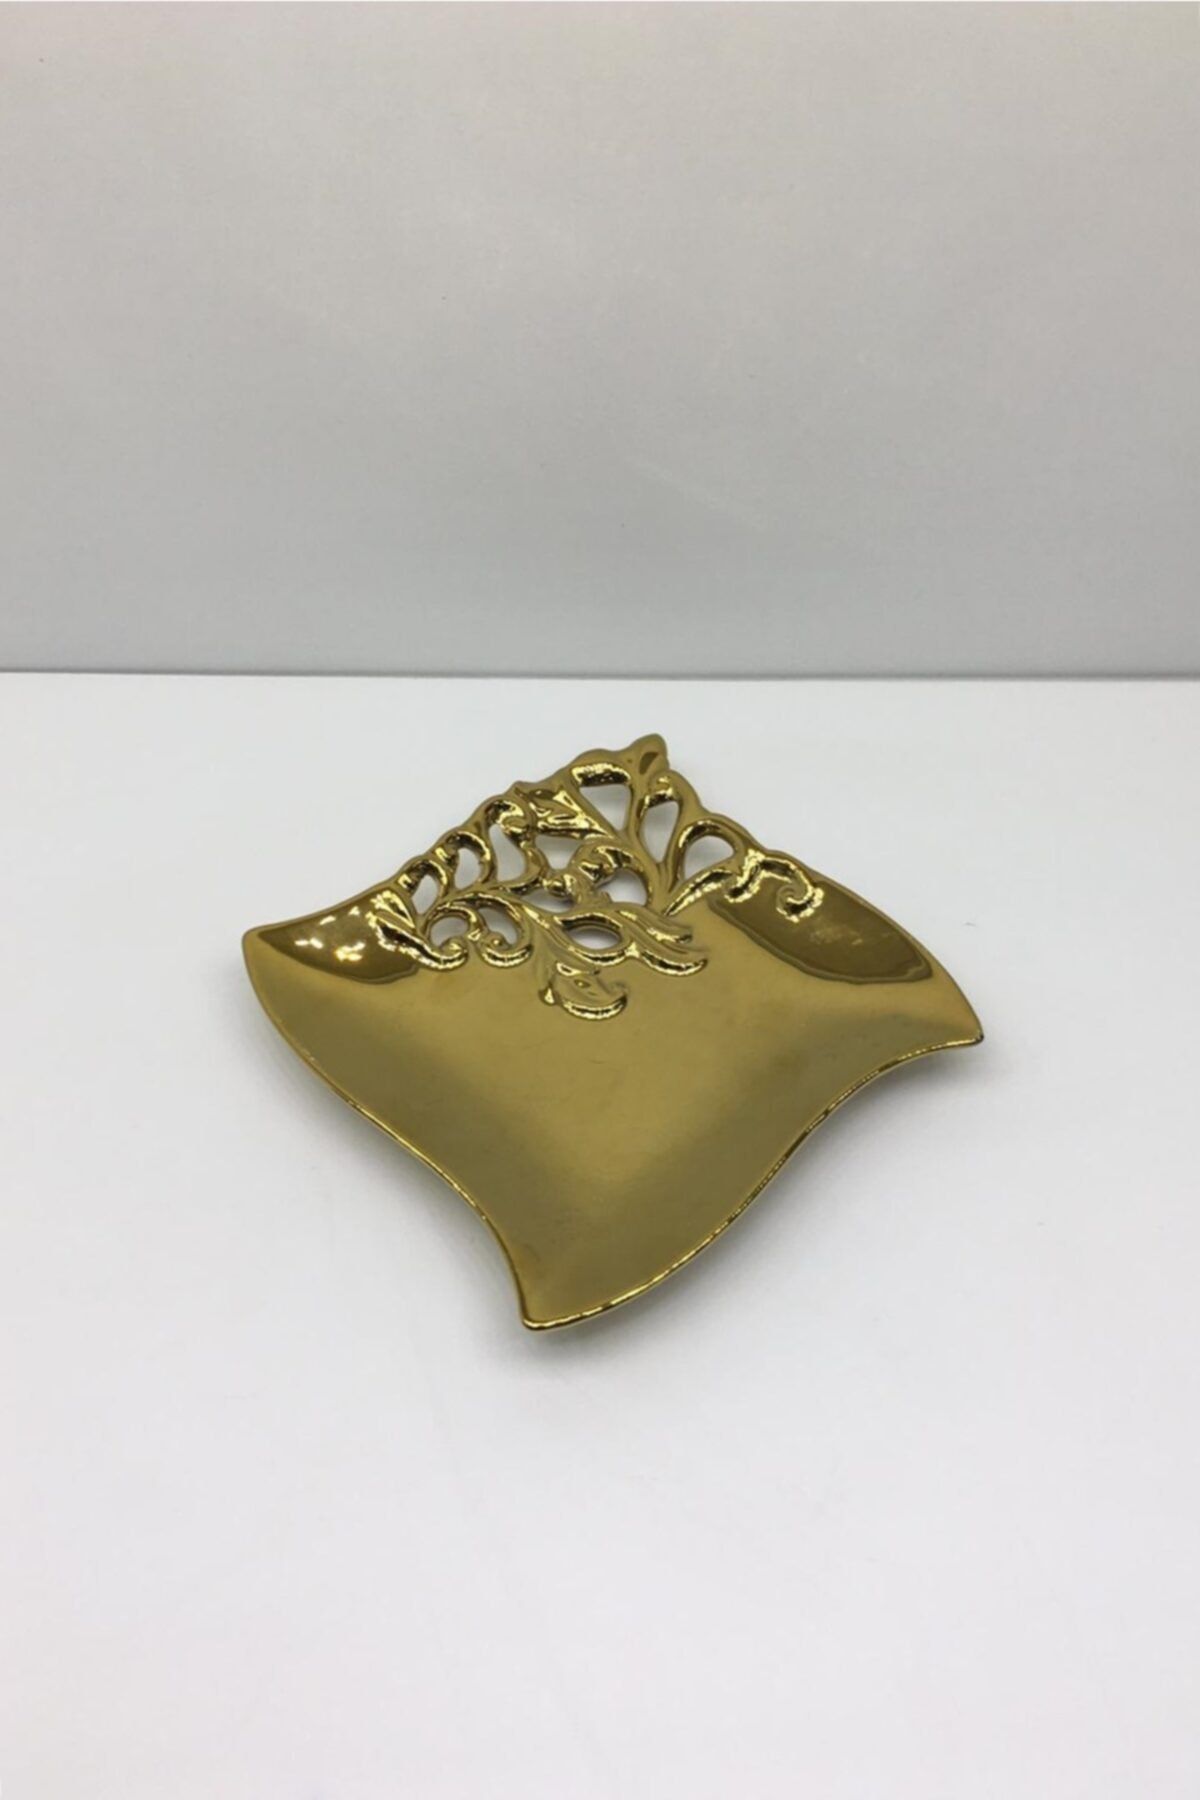 Otantik Dekoratif Porselen Obje Altın Tabak 3x17 Cm